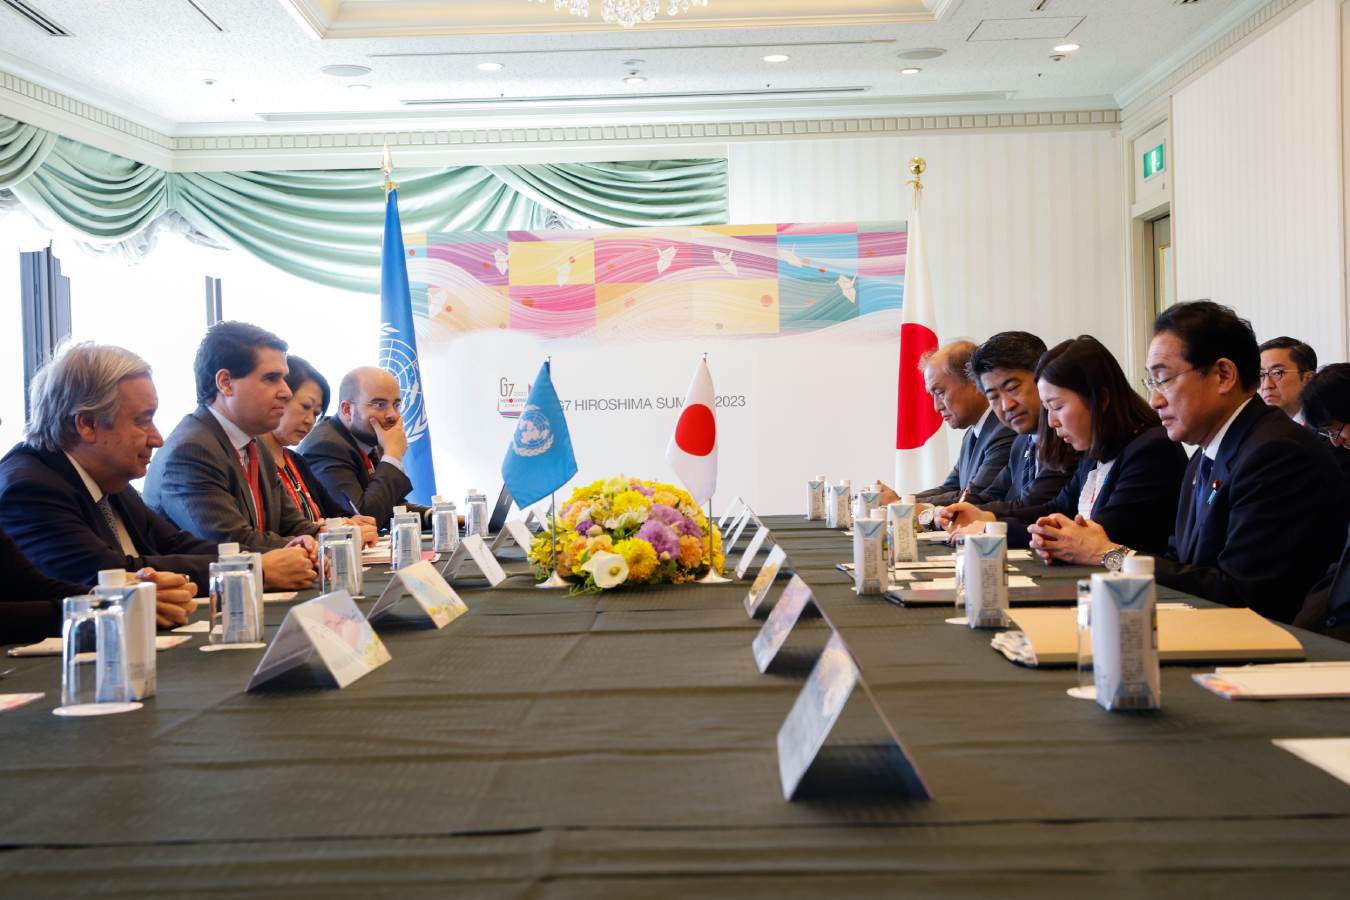  sastanak g7 u japanu 